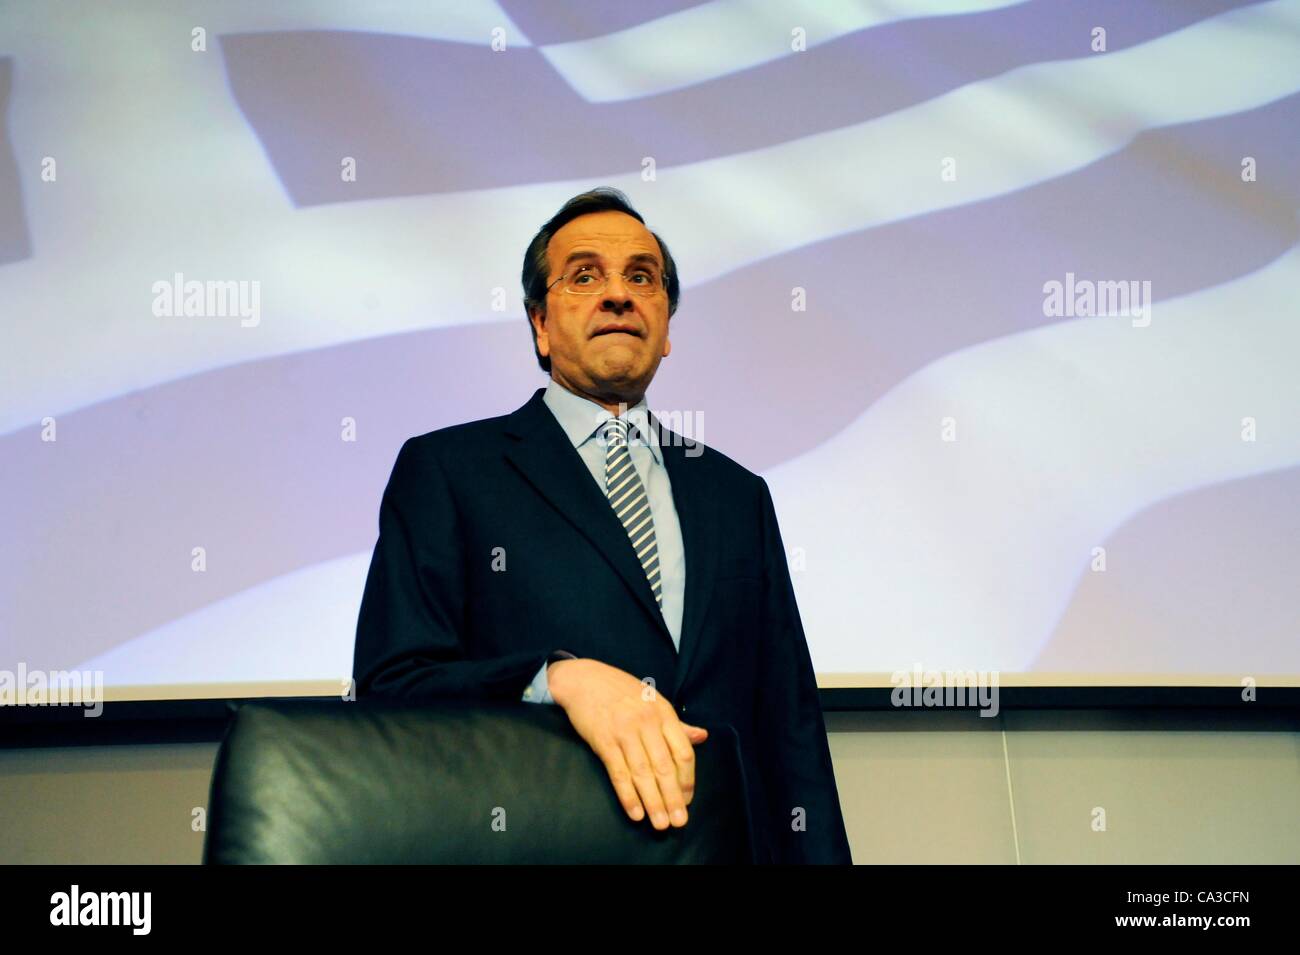 Athènes - Grèce, le 31 mai 2012 - parti Antonis Samaras, chef du parti conservateur Nouvelle démocratie, présentant le programme économique du parti à l'A.C.C.I. Athènes (Chambre de Commerce d'Industrie) Banque D'Images